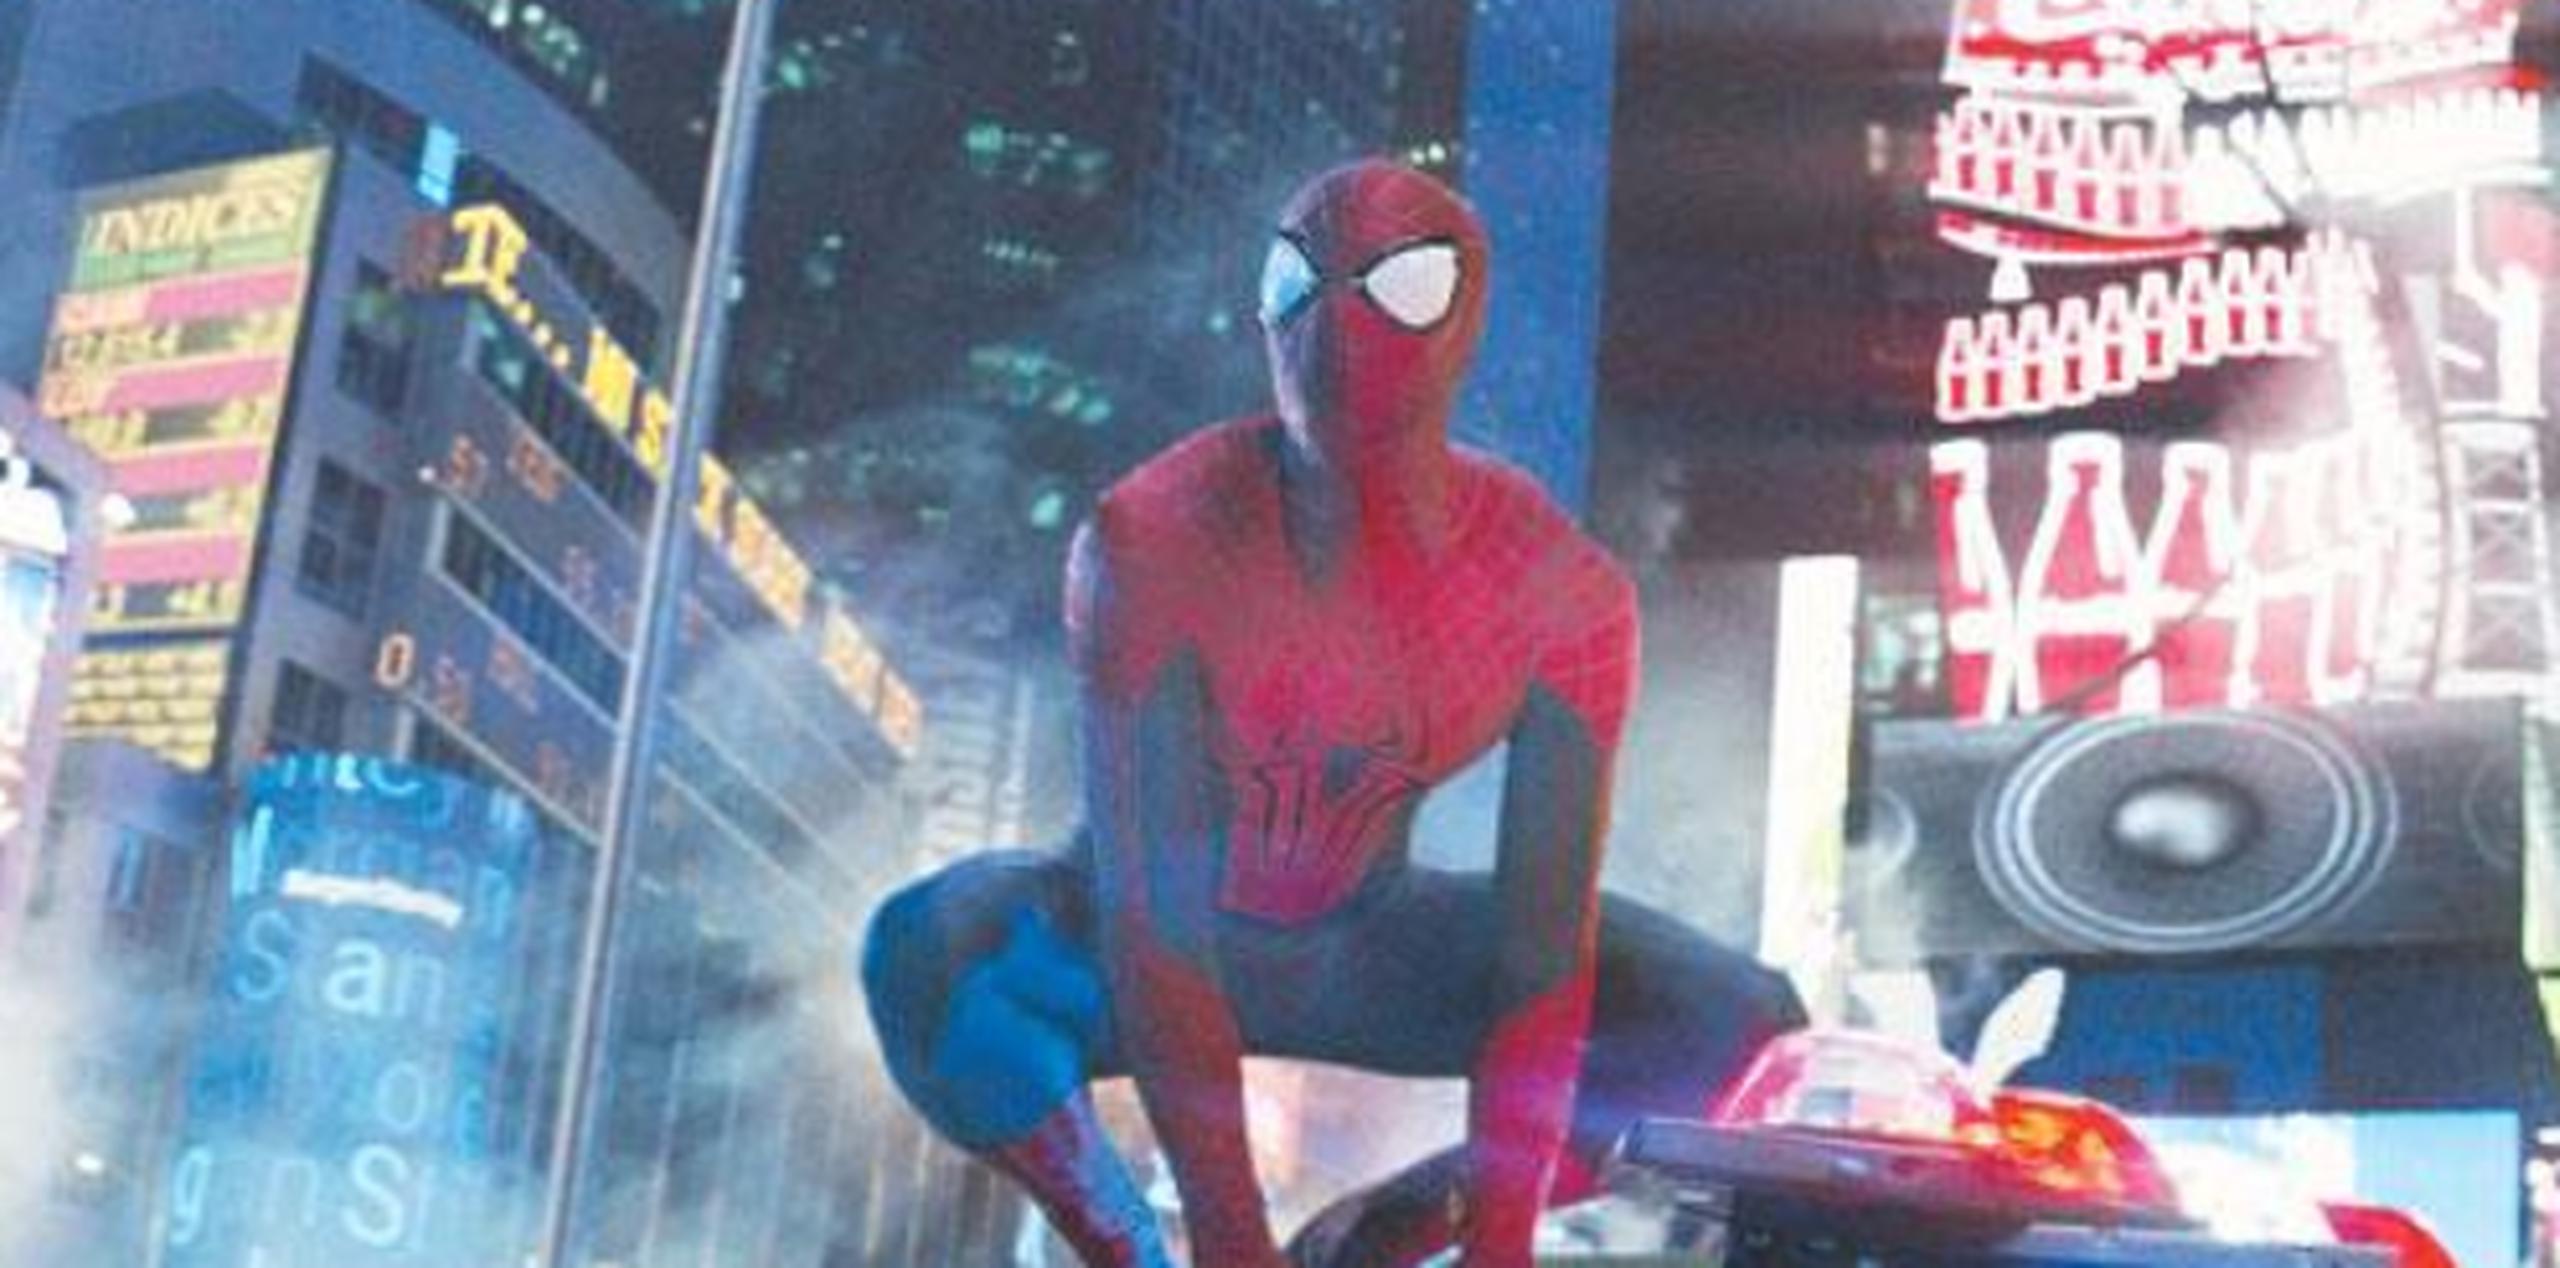 "Spiderman: Homecoming" de Marvel Studios y Sony Pictures llega a los cines en julio. (Archivo)

